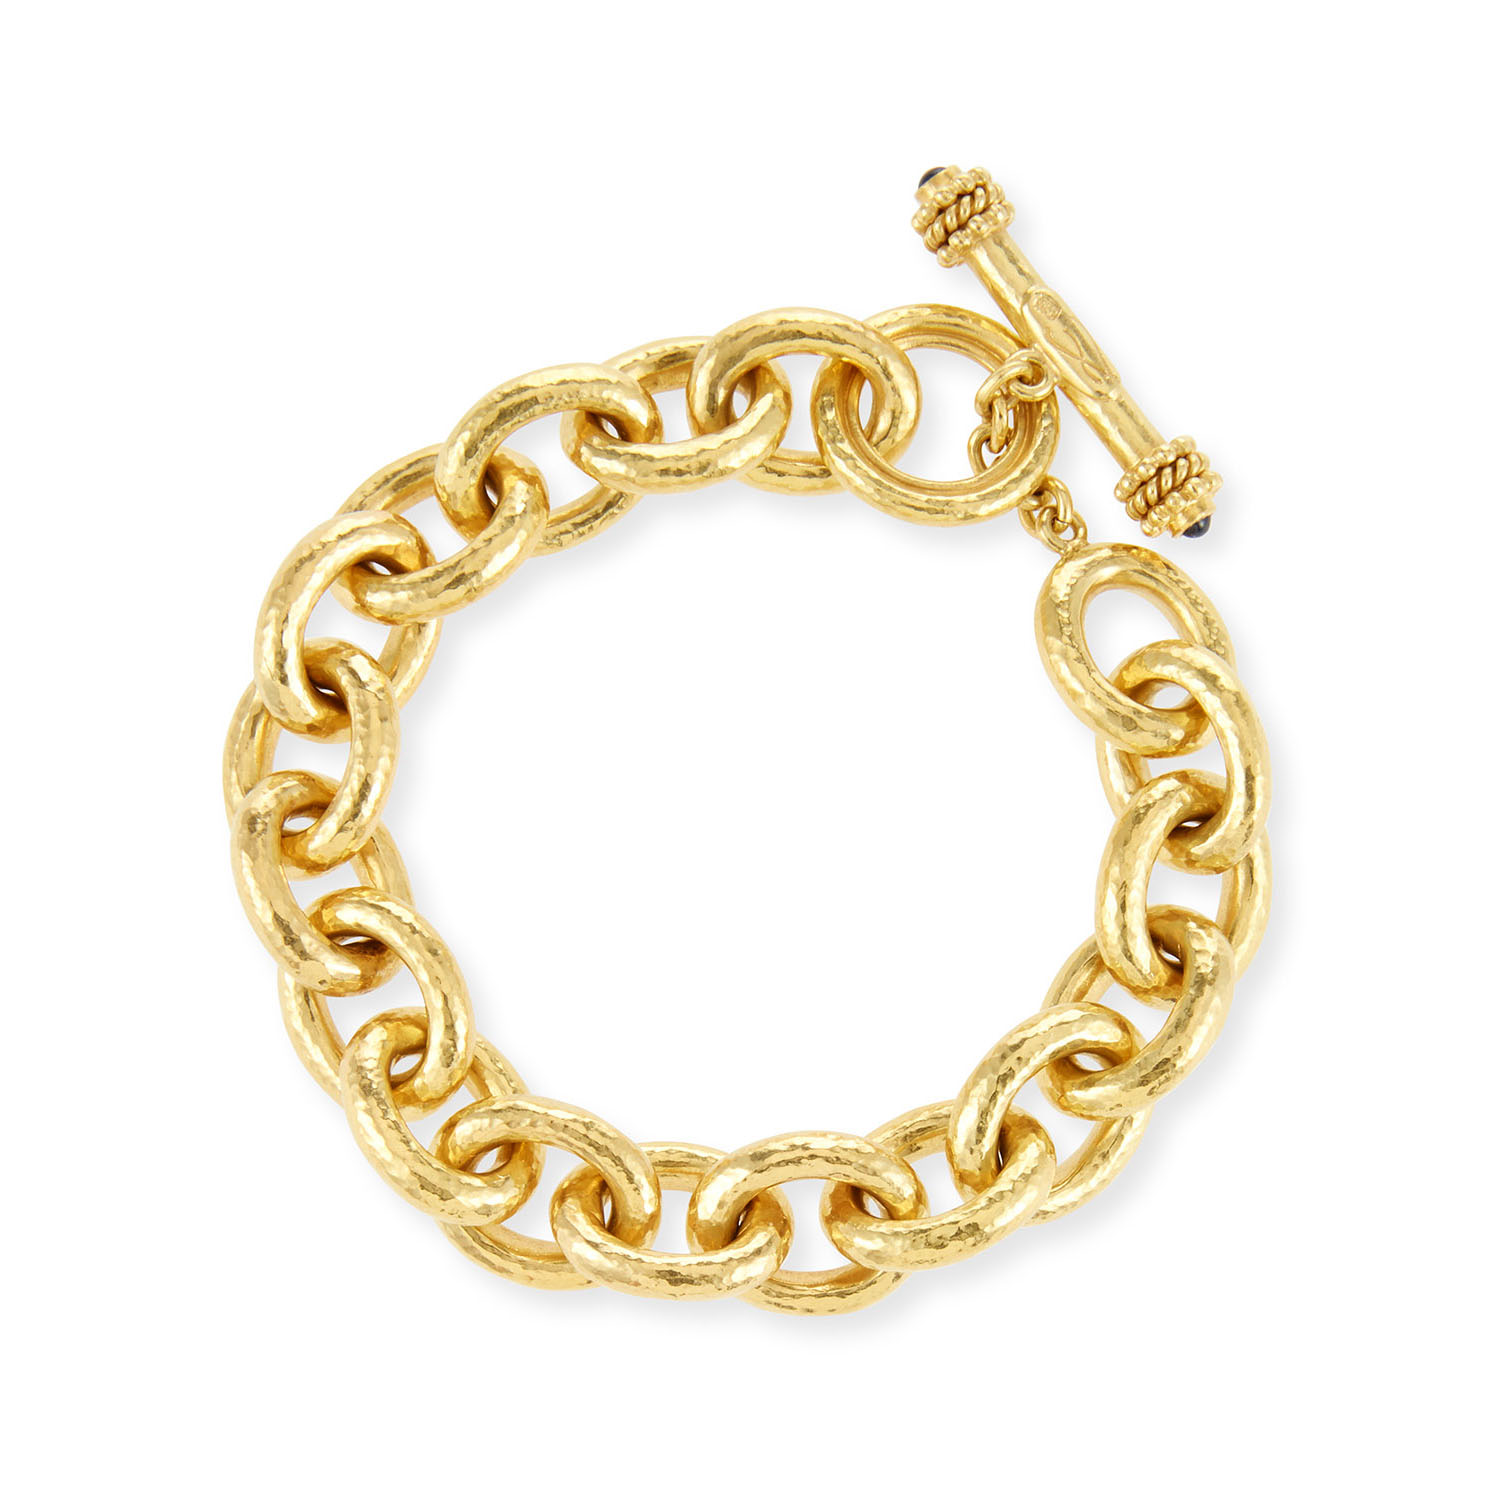 الجملة OEM / ODM مجوهرات مخصصة 19K سوار الذهب المصنوع من الشركة المصنعة للمجوهرات التصميمية الخاصة بك